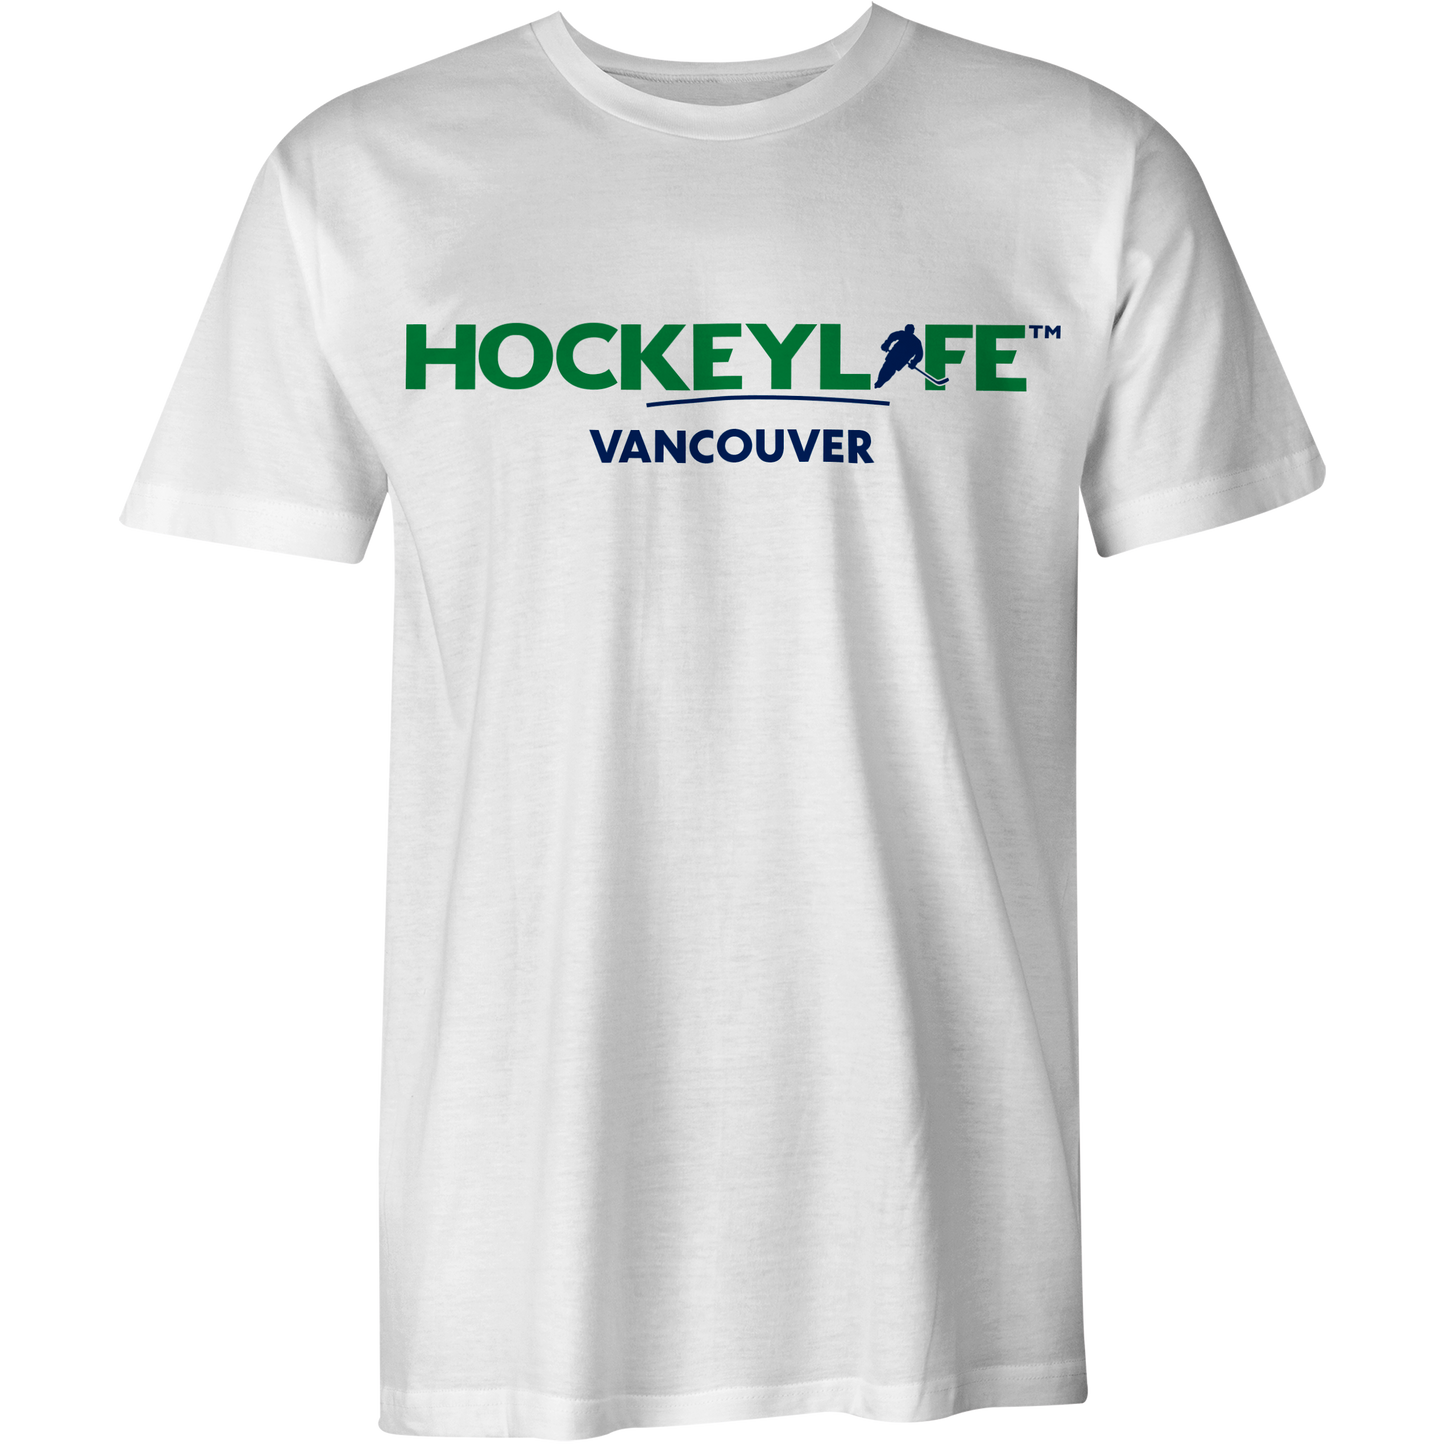 HockeyLife Vancouver Tee Shirt